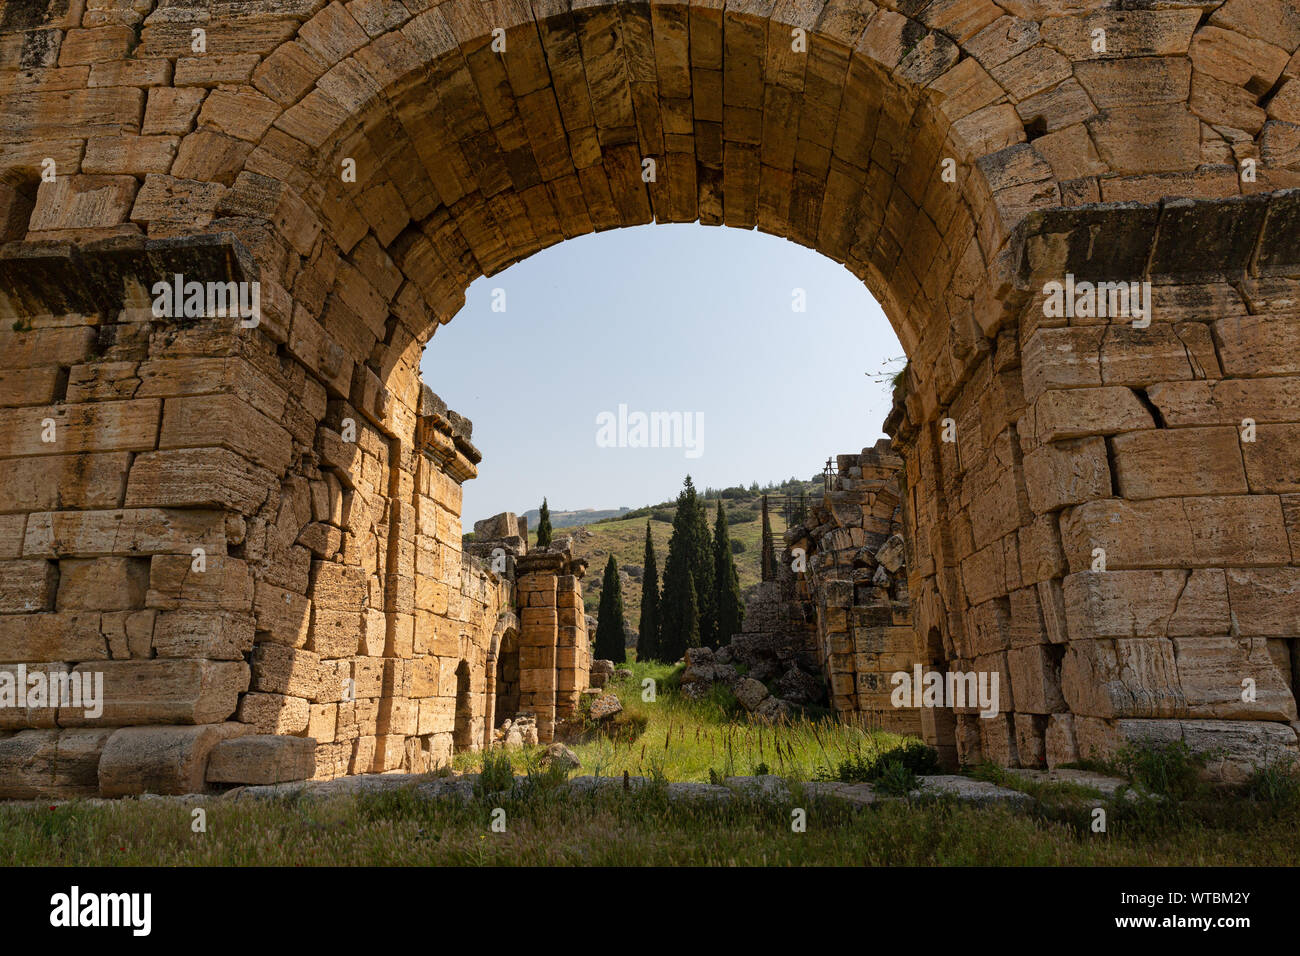 Les portes anciennes en arc à Hiérapolis - Pamukkale - Turquie - Château de coton Banque D'Images